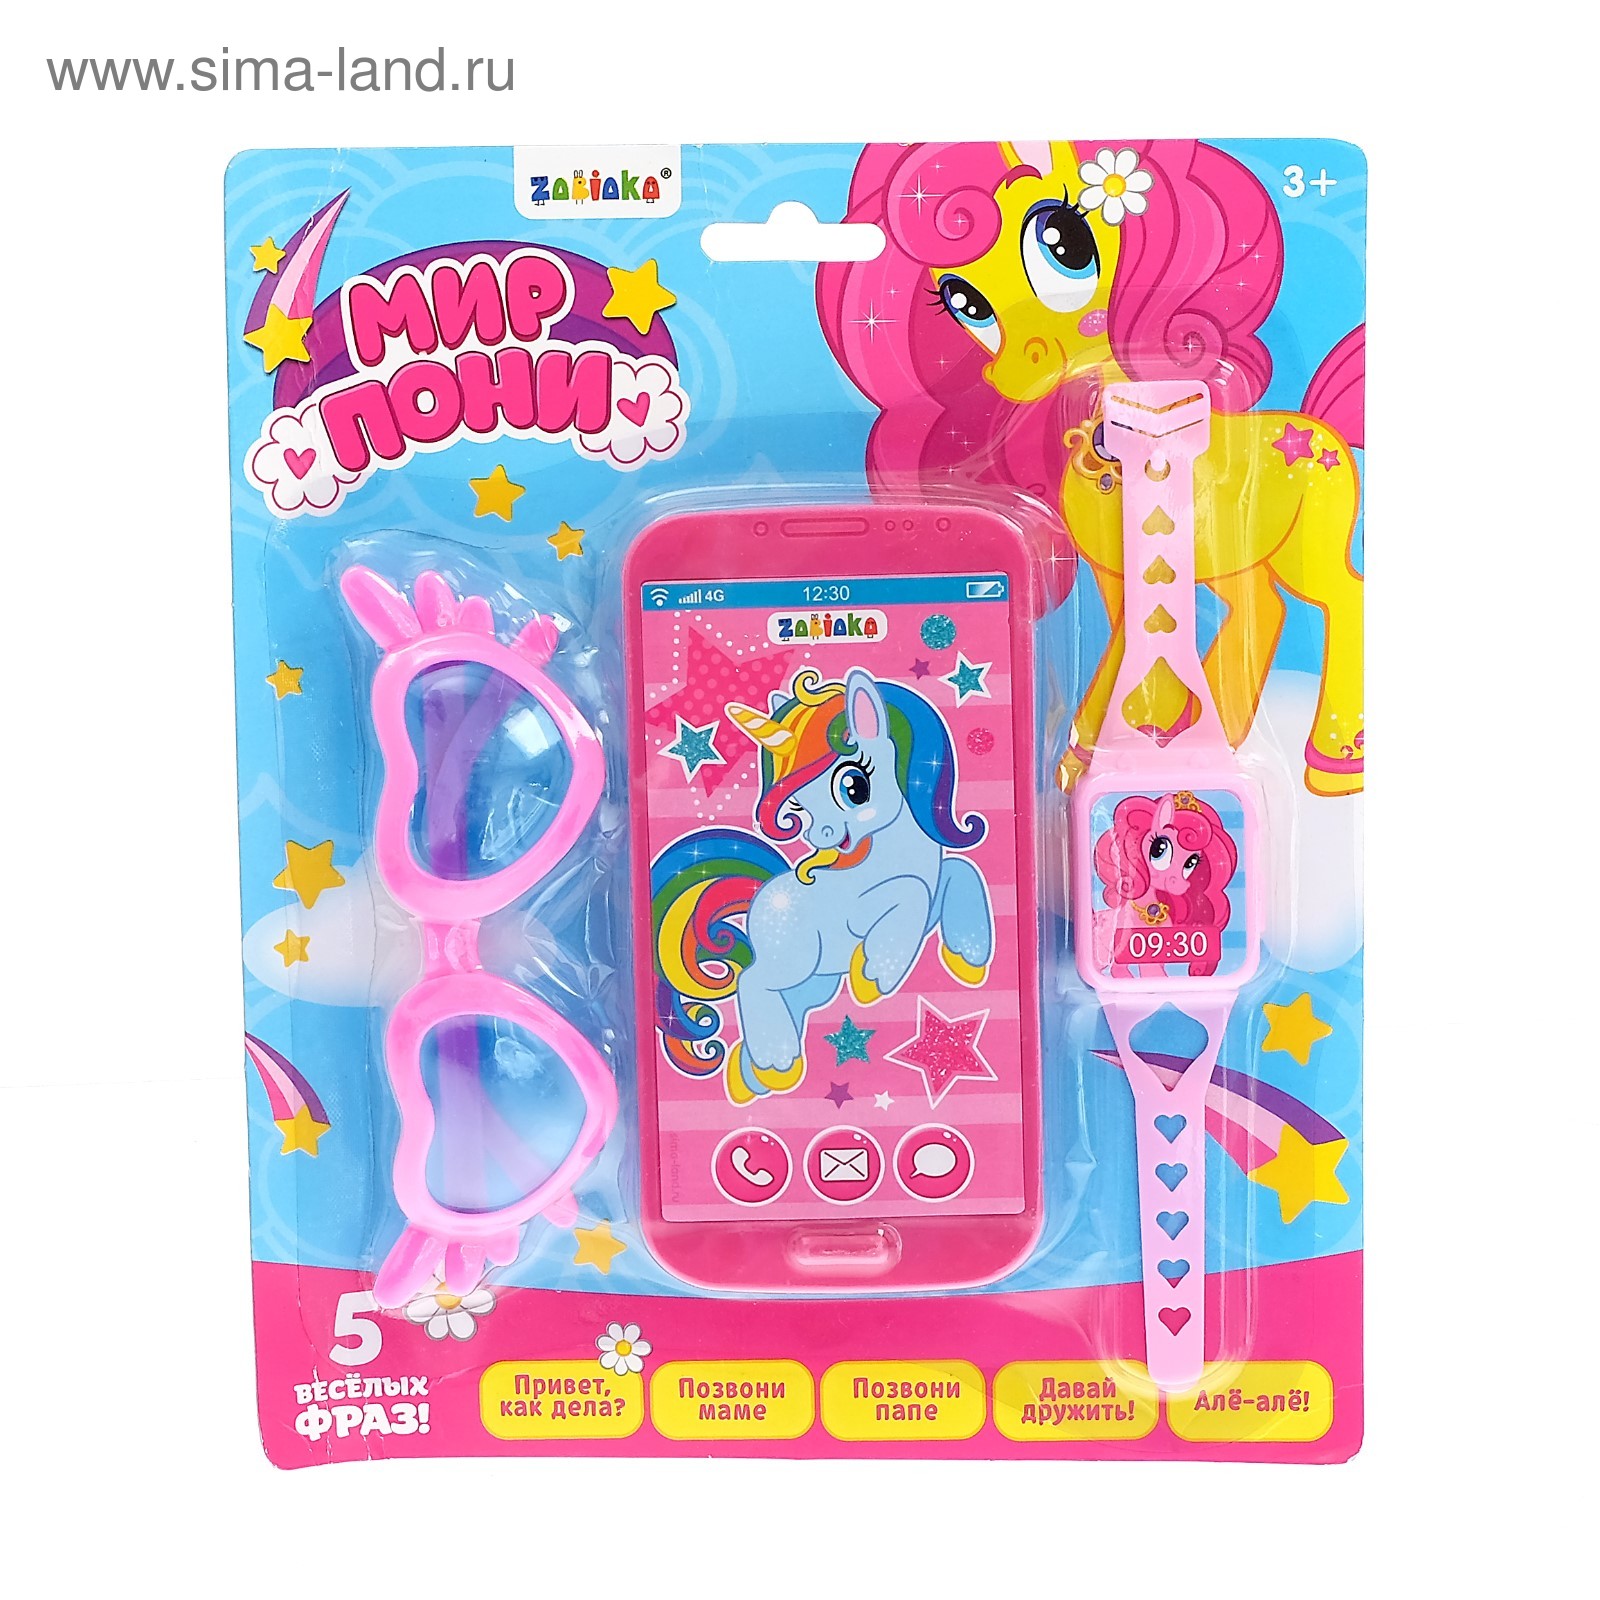 Pony телефон. Телефон пони. Игрушечные часы очки и телефон. Игровой телефон poni Toys. Часы проектор Волшебный мир пони.